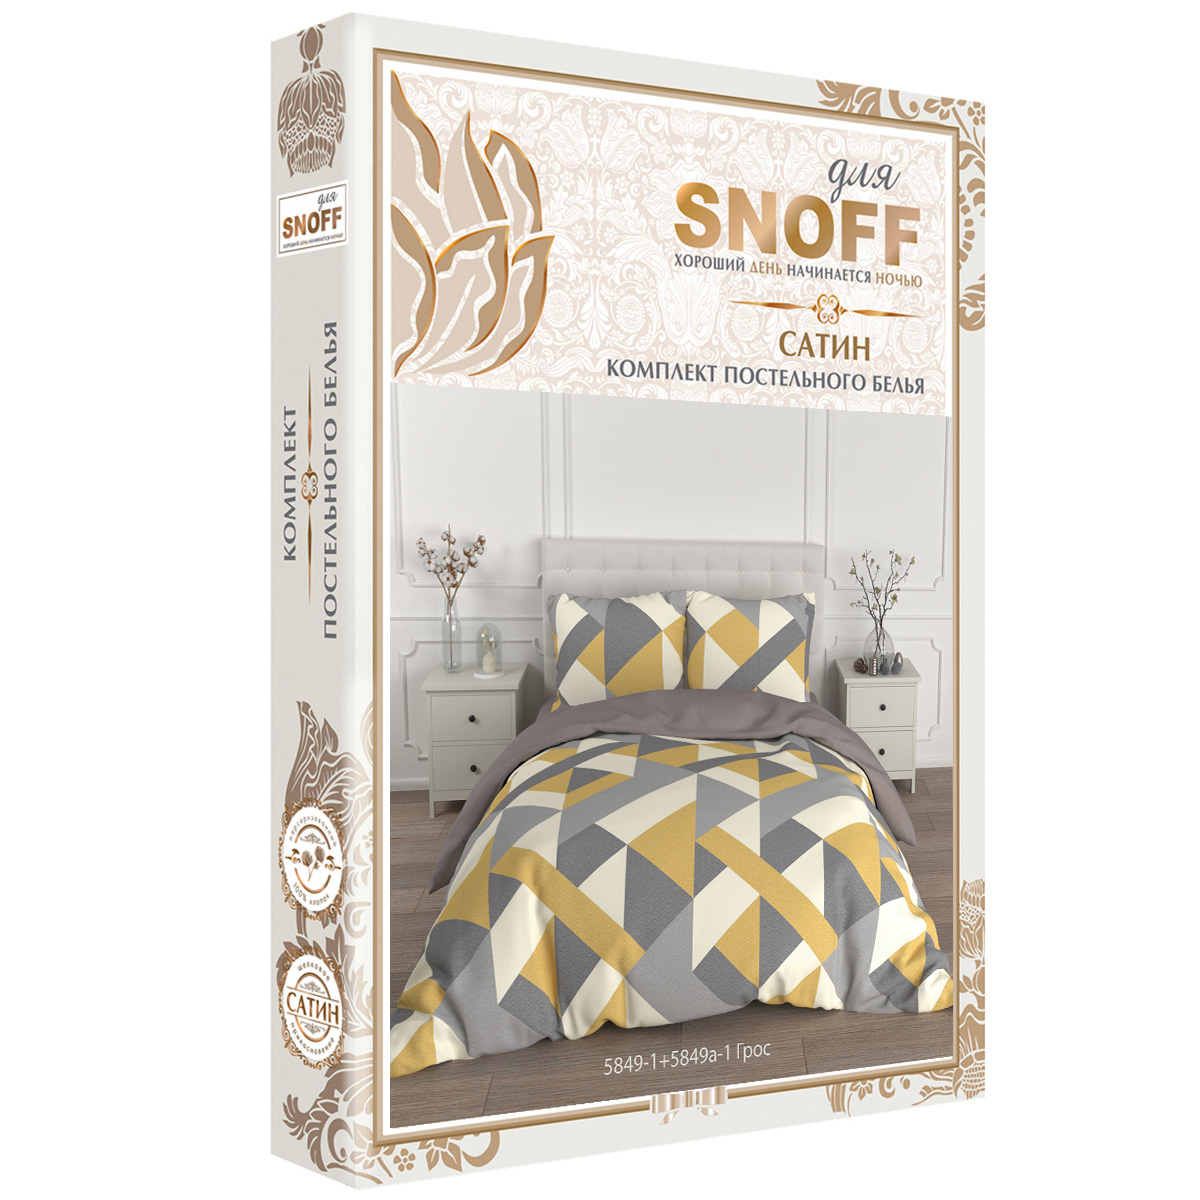 Комплект постельного белья для SNOFF Грос семейный сатин - фото 7